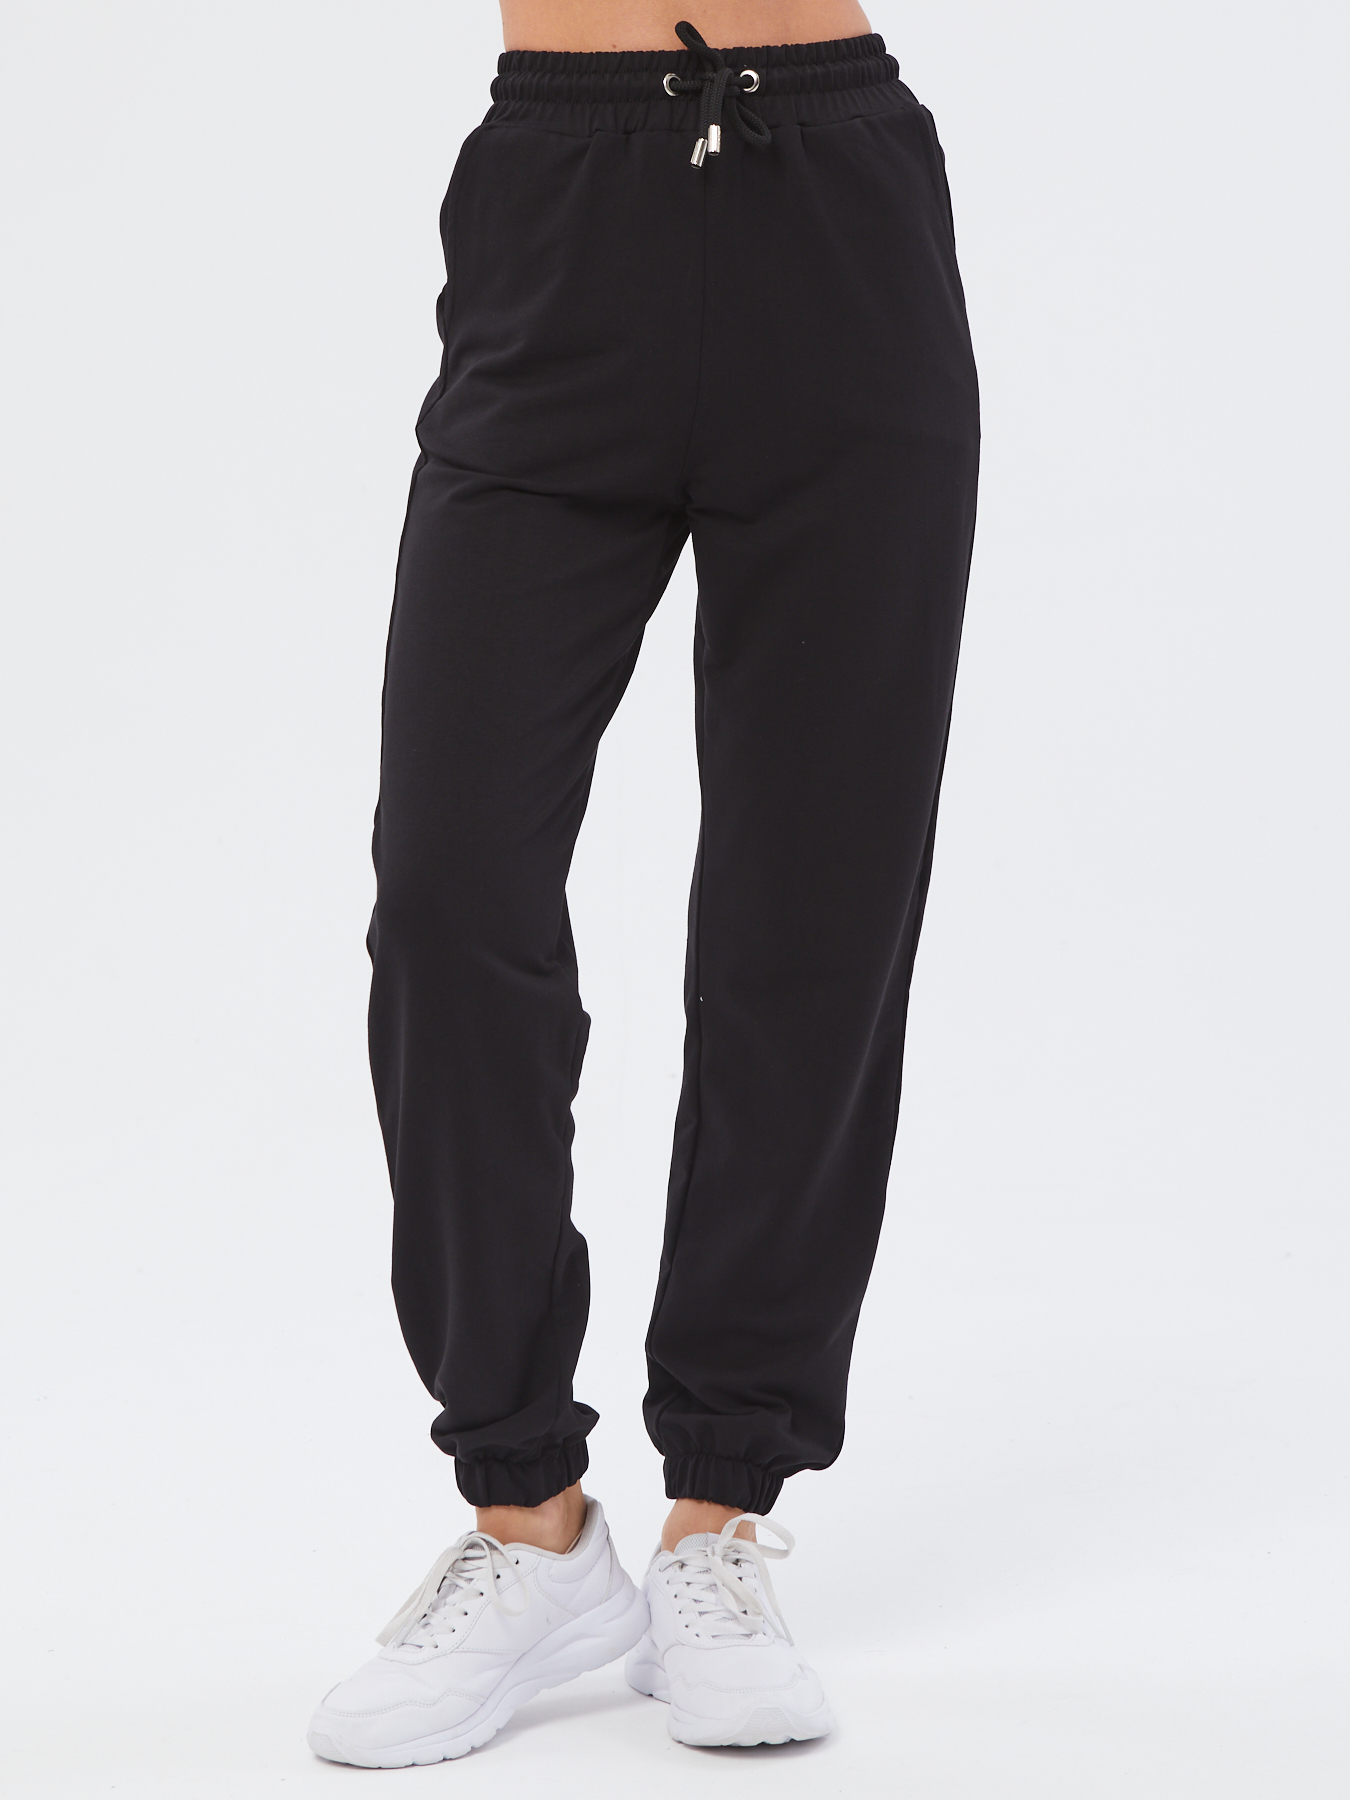 Спортивные брюки женские Still-expert б5 черные 46/150-165